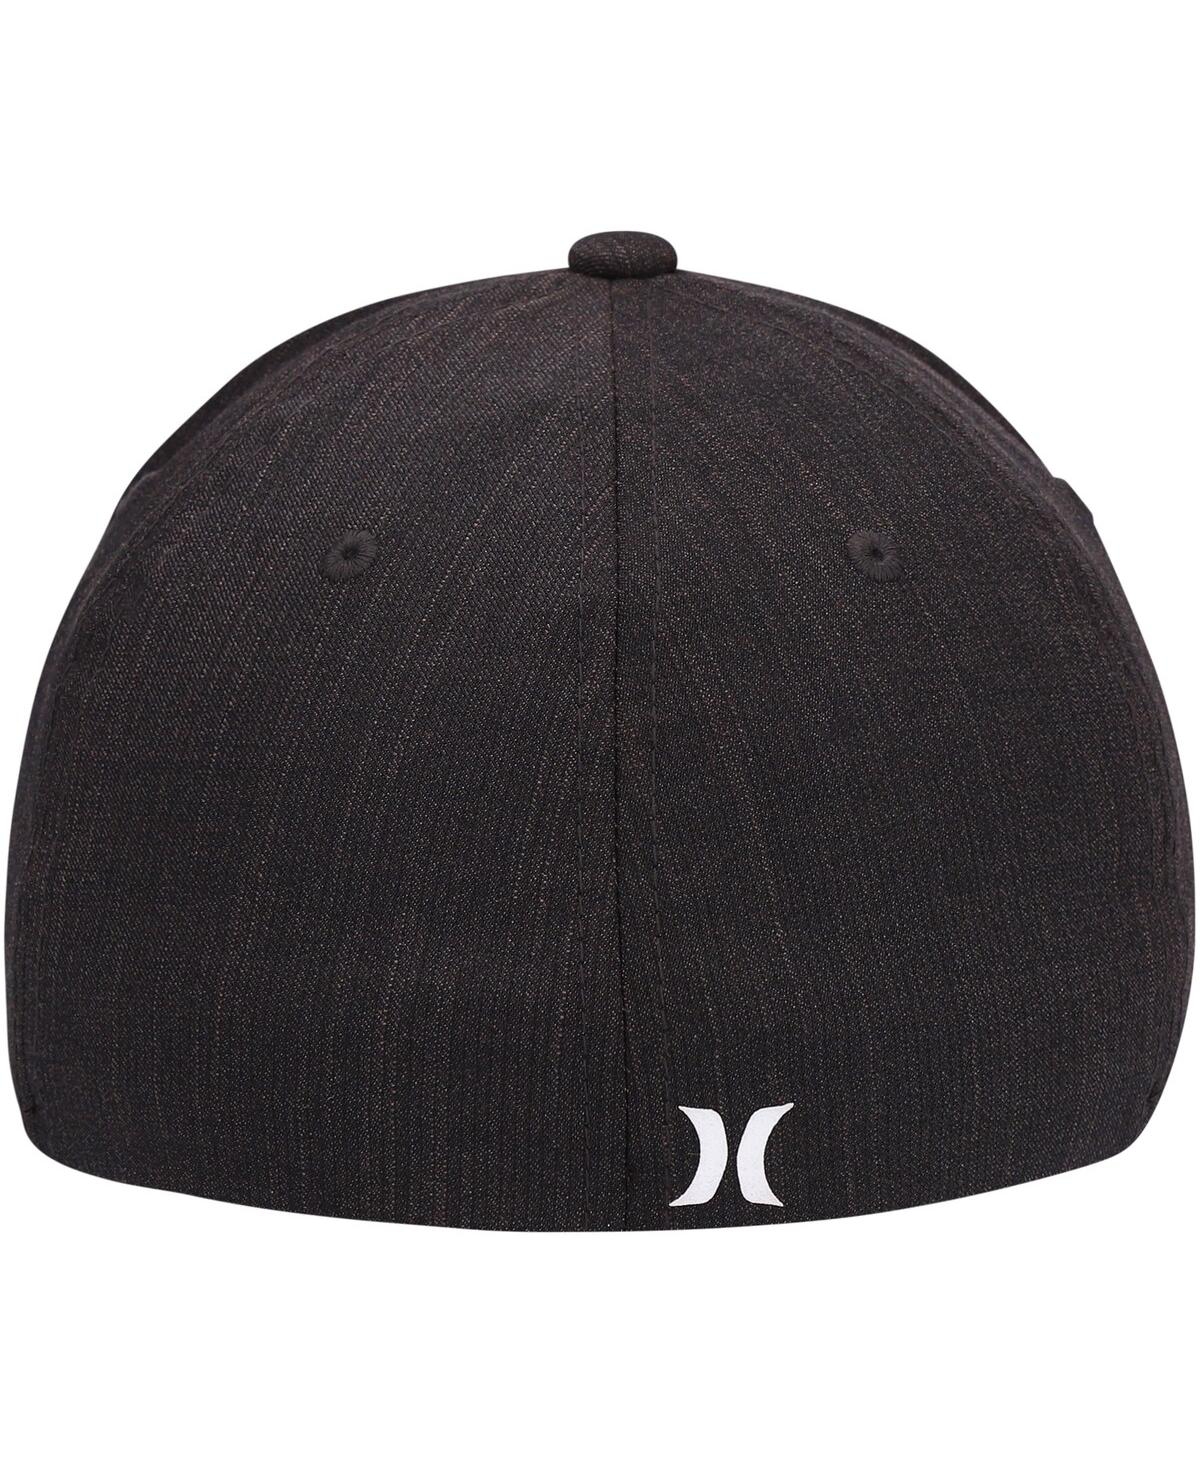 Shop Hurley Men's  Black H20-dri Line Up Flex Hat